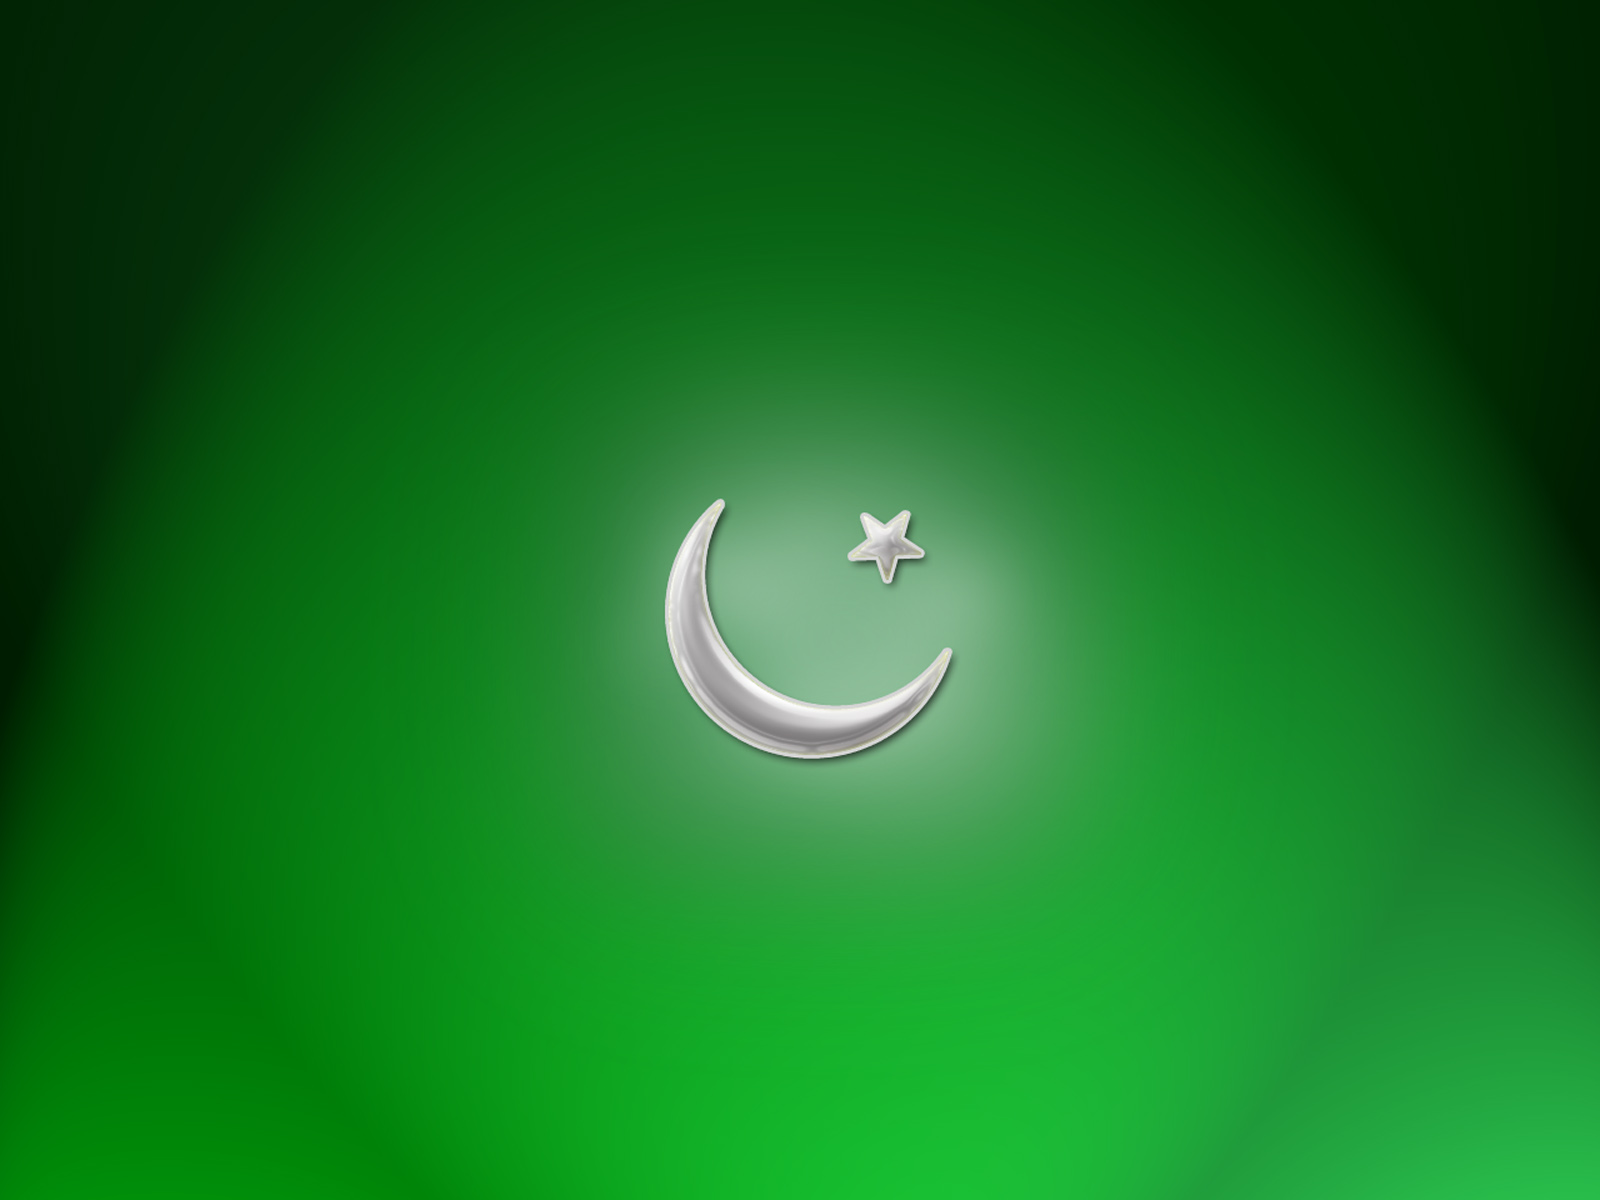 pakistan flag wallpaper,verde,creciente,símbolo,fuente,icono